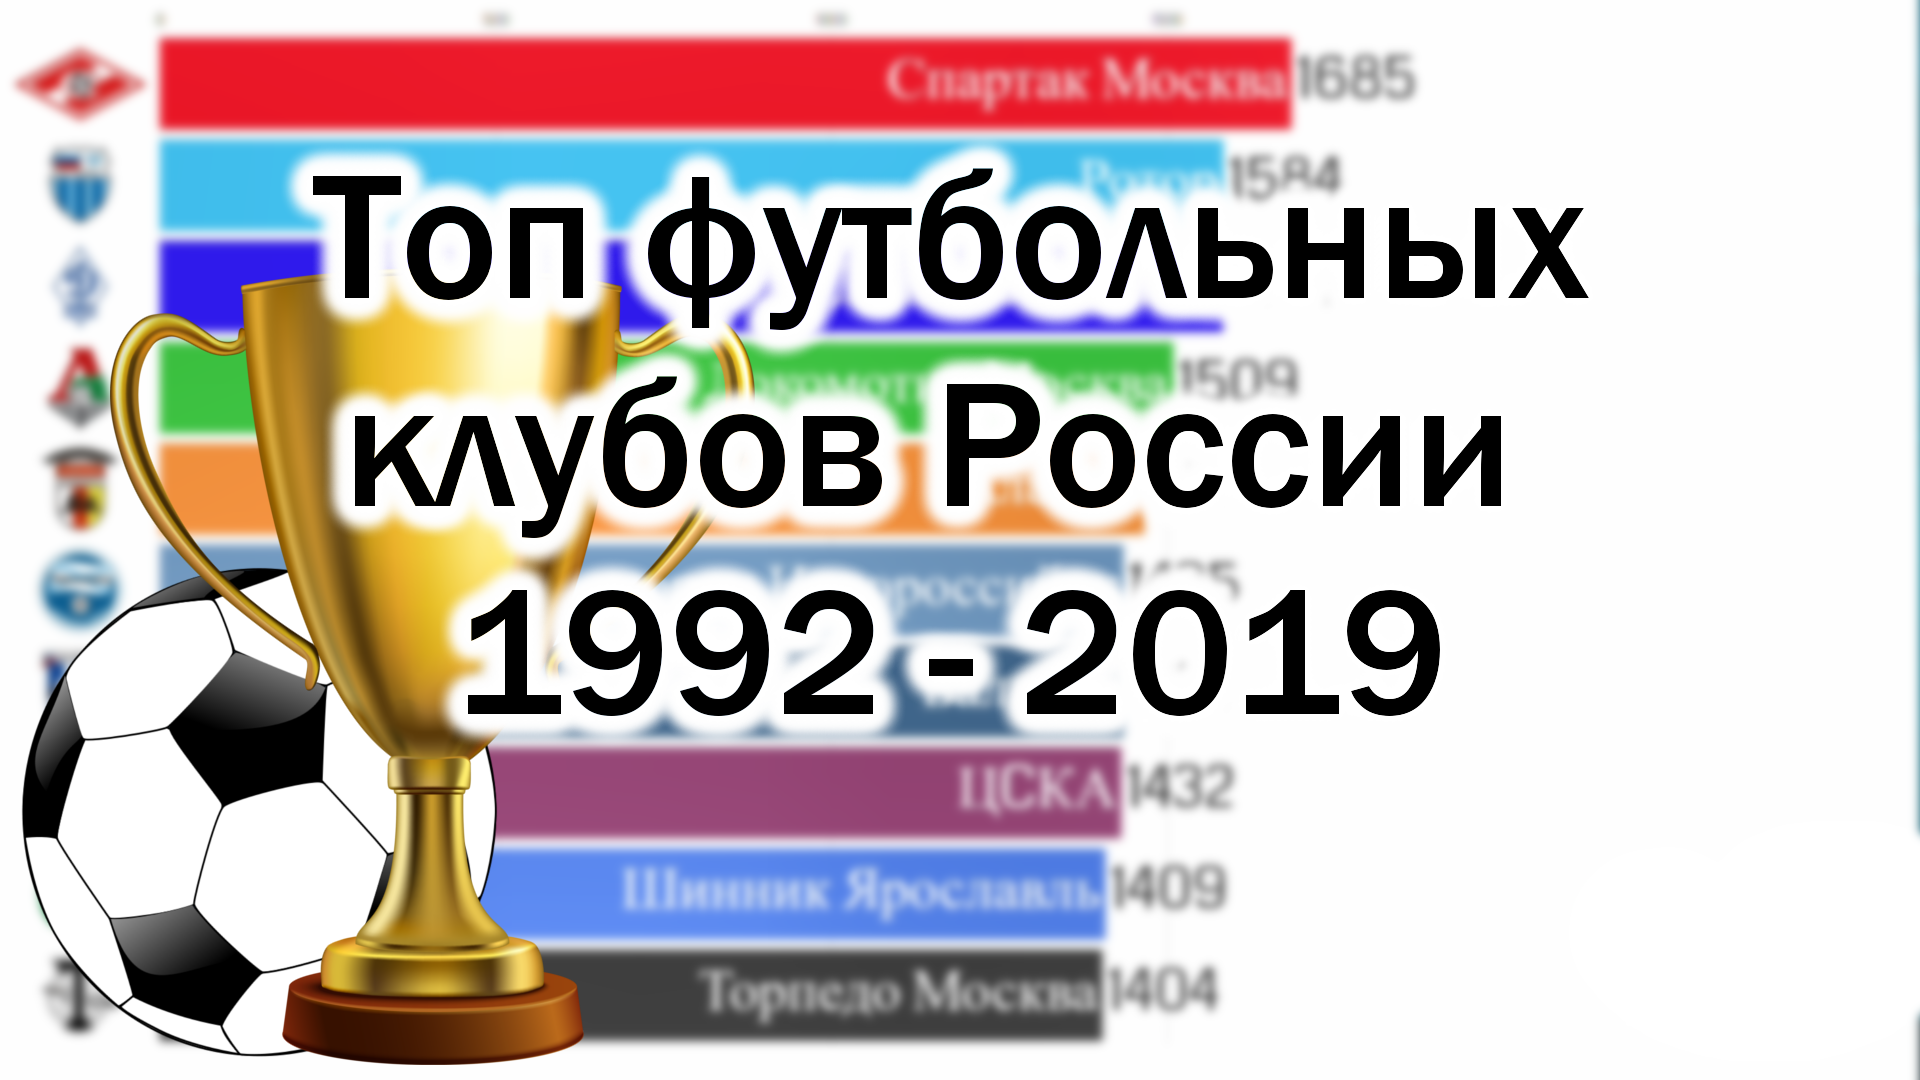 Топ футбольных команд России с 1992 по 2019 годы